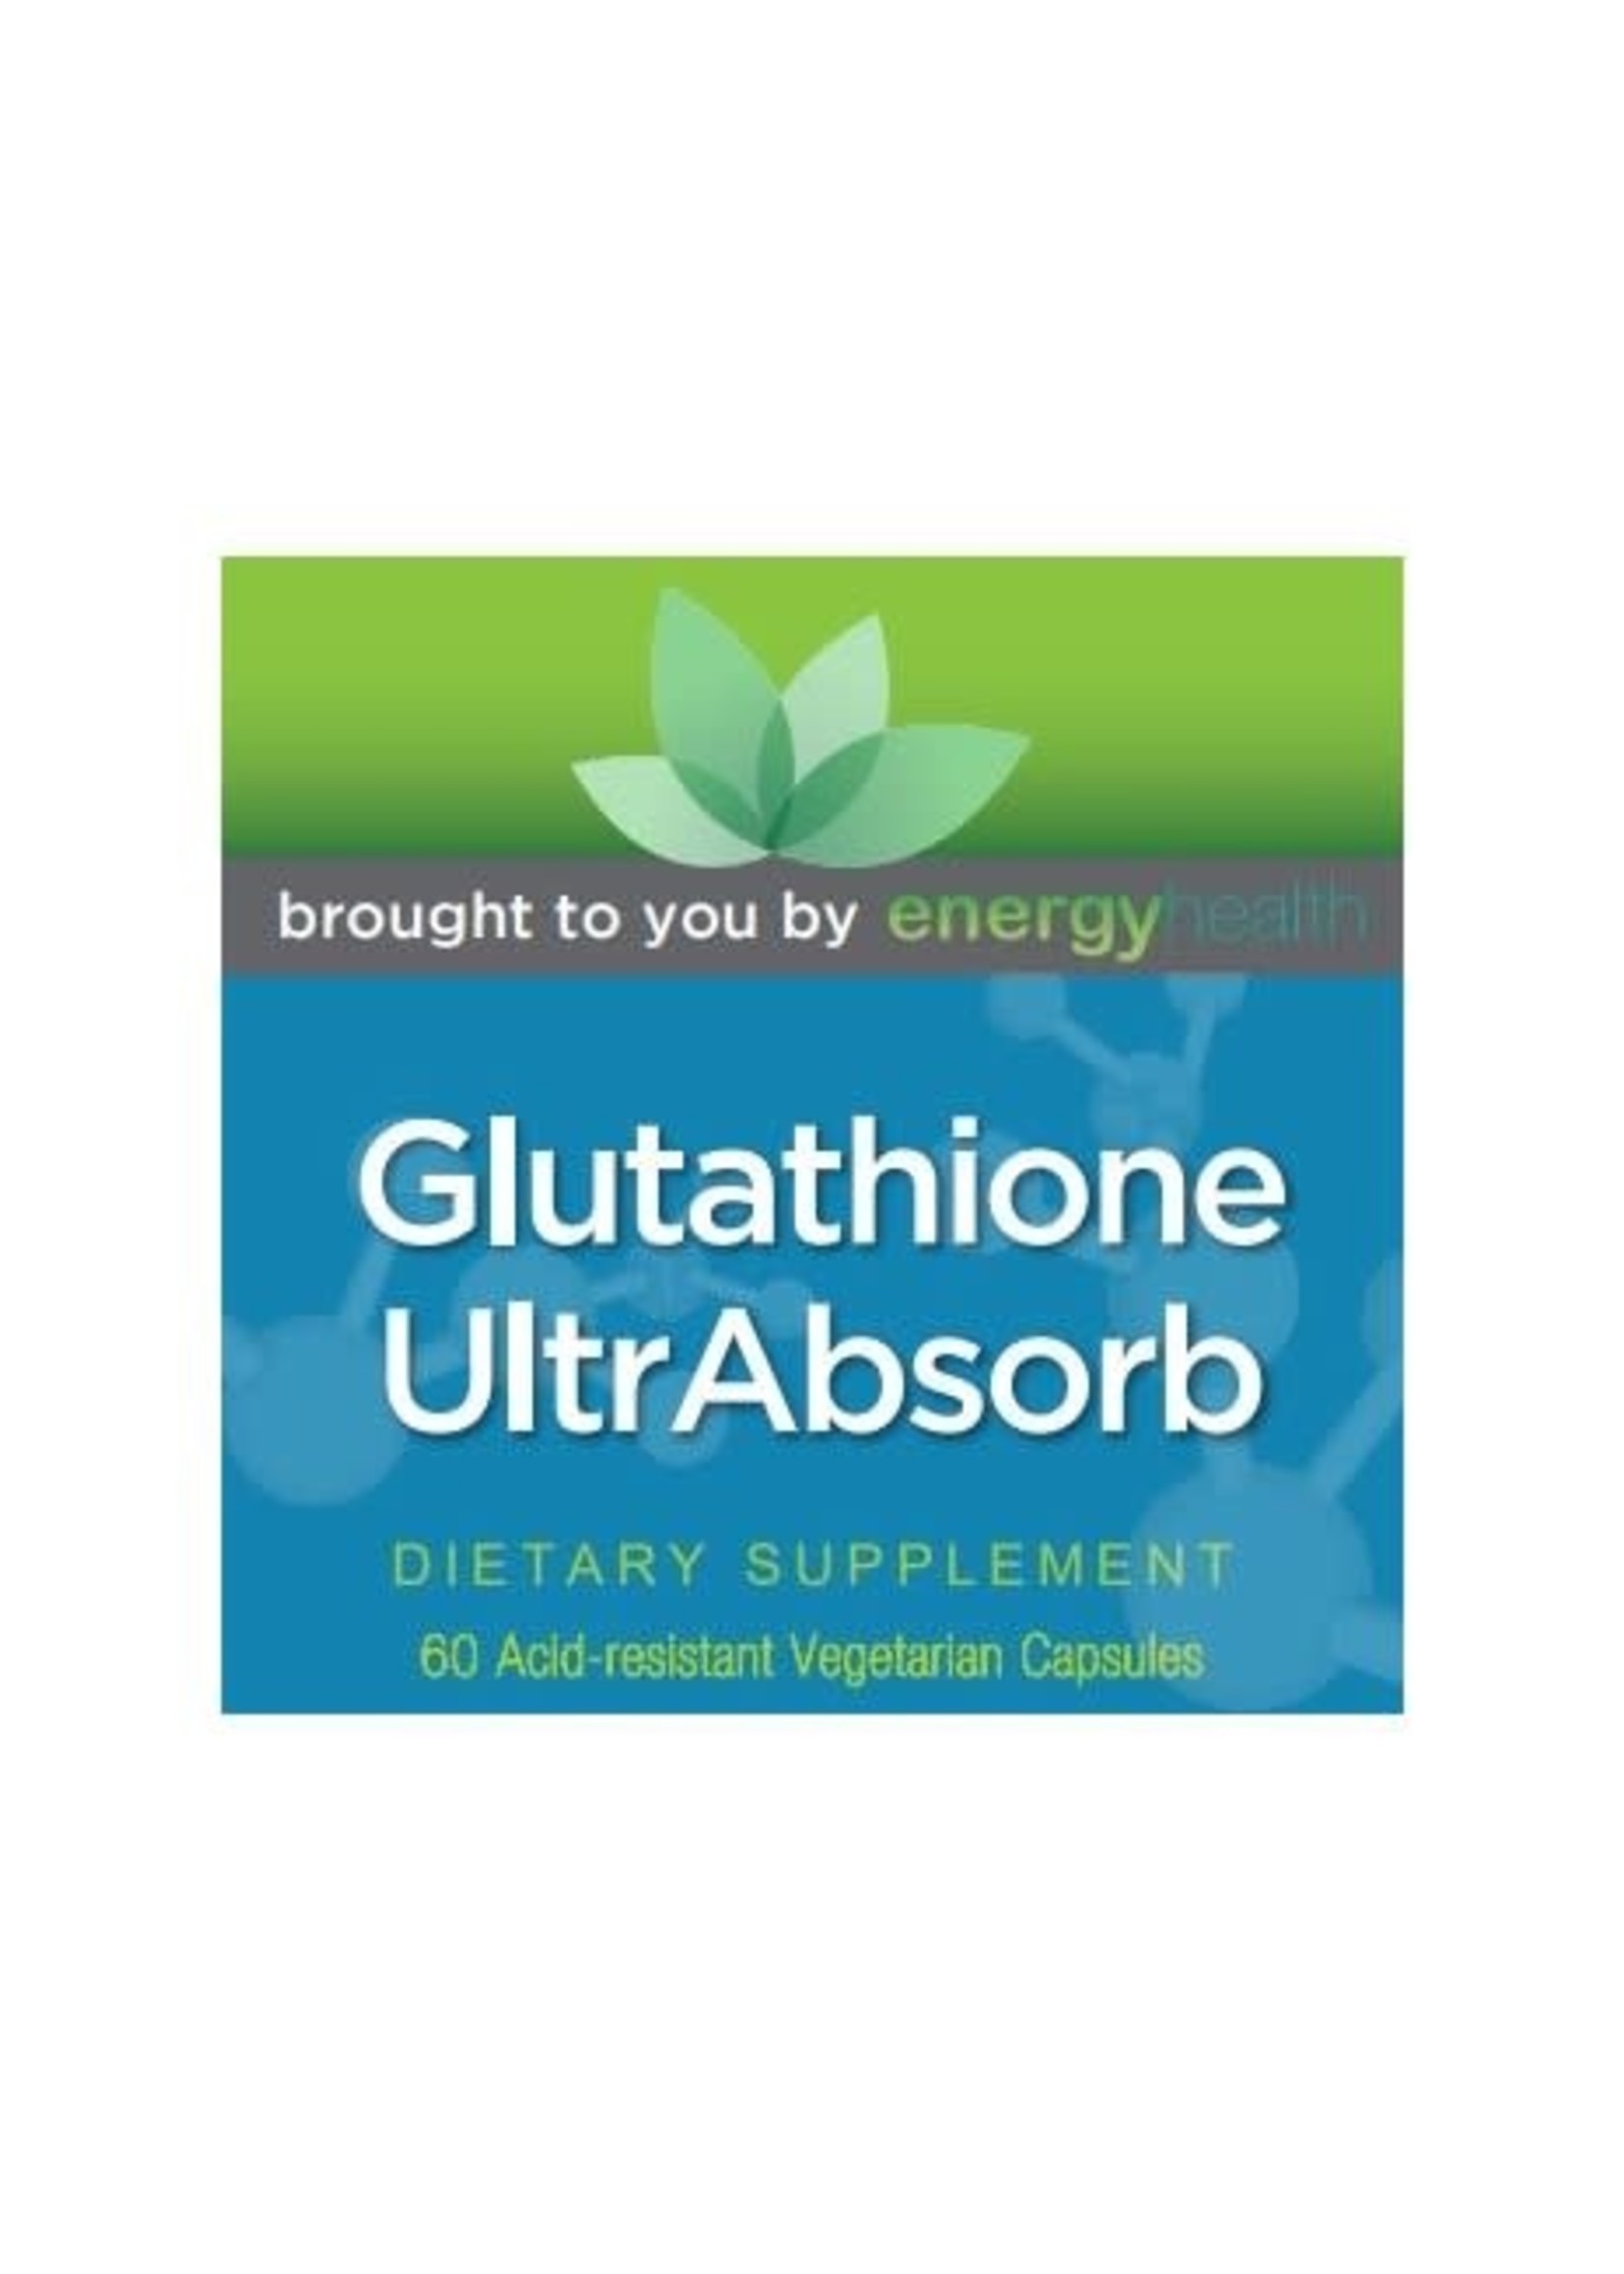 Glutathione UltrAbsorb